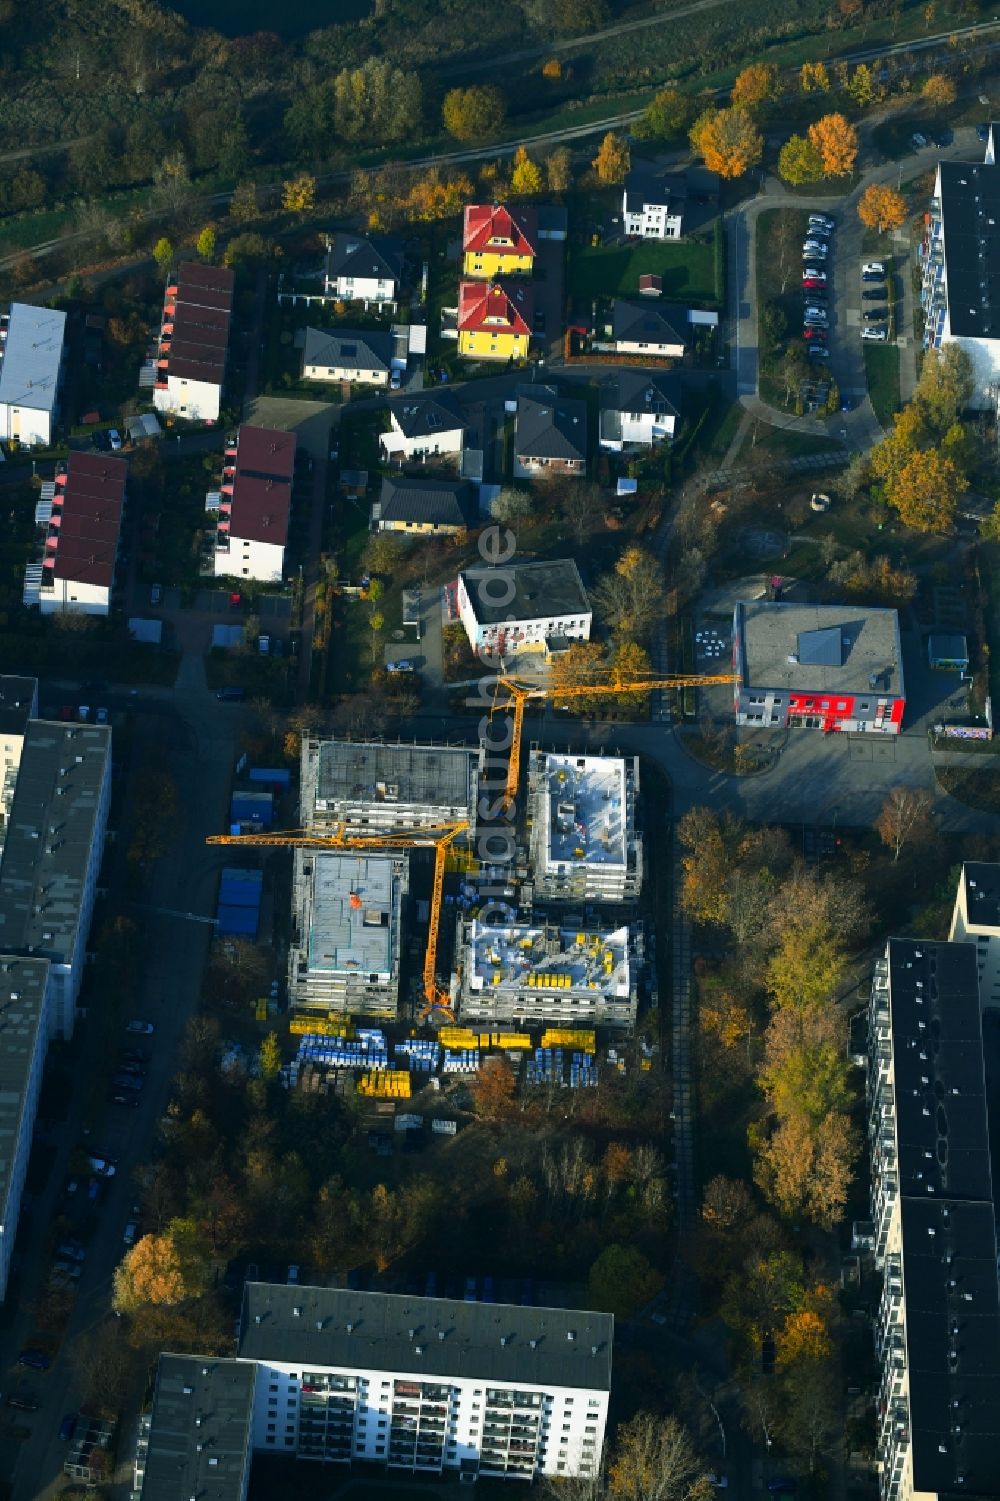 Luftbild Berlin - Baustelle Wohngebiet einer Mehrfamilienhaussiedlung am Kummerower Ring im Ortsteil Kaulsdorf in Berlin, Deutschland